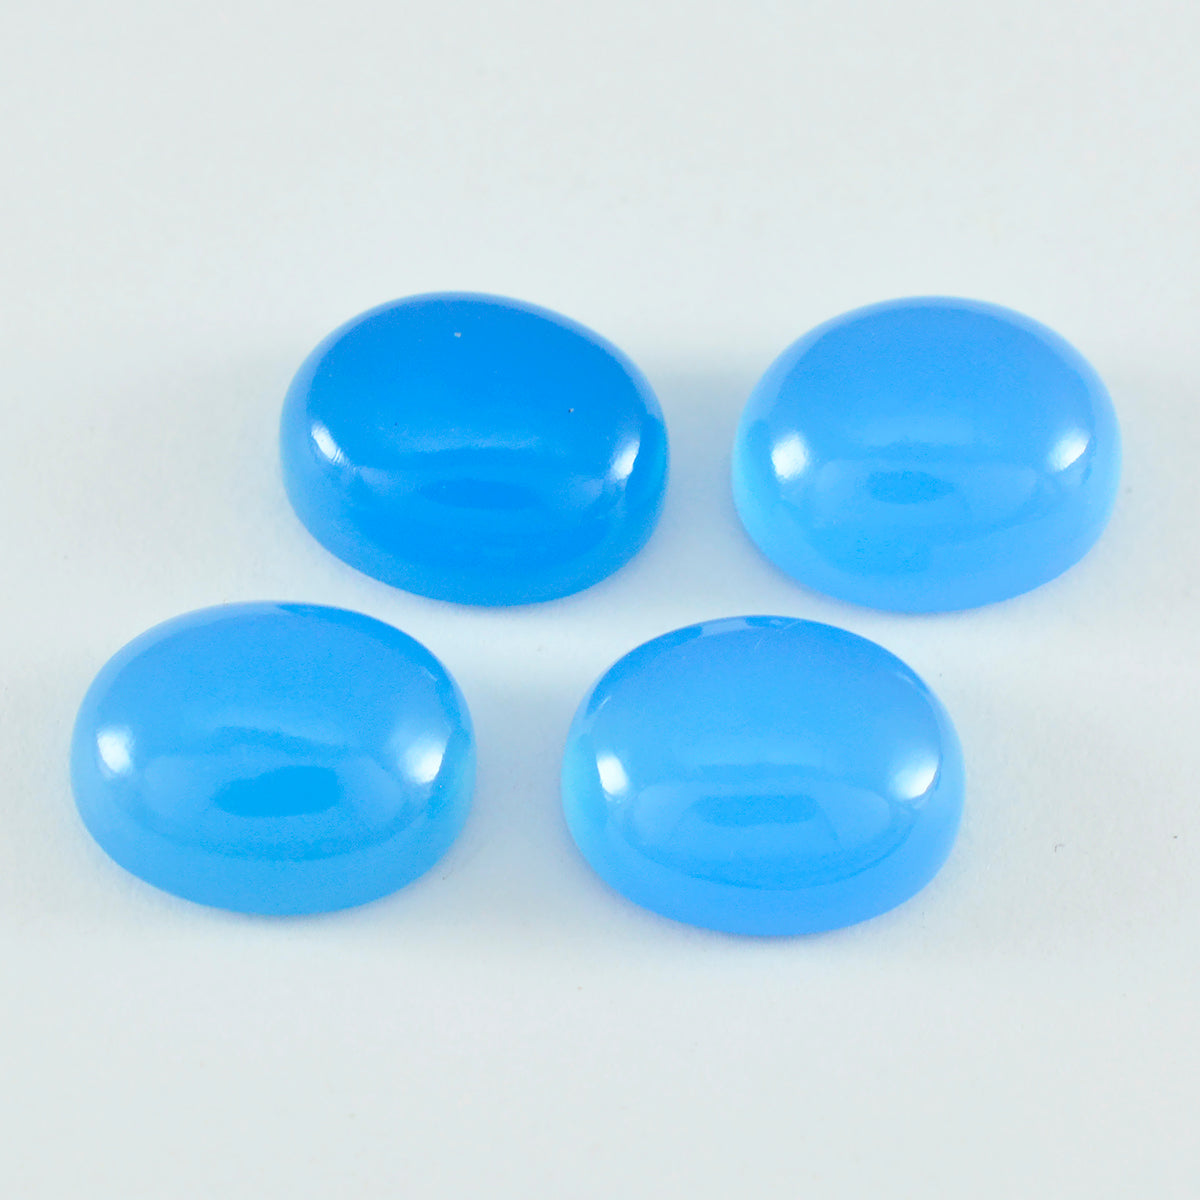 riyogems 1pc cabochon di calcedonio blu 6x8 mm di forma ovale, gemma sfusa di meravigliosa qualità